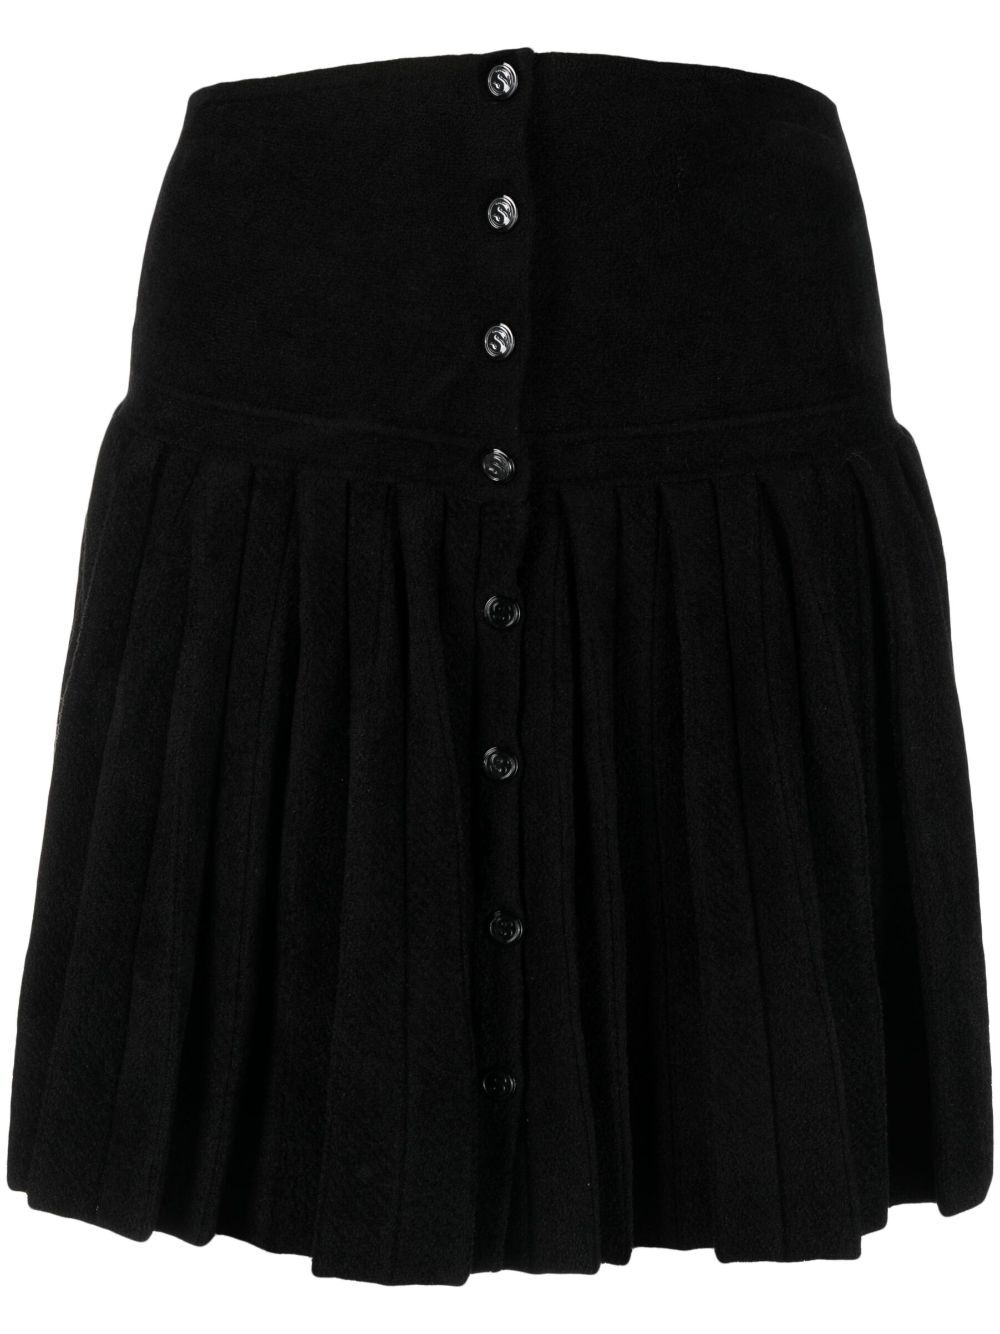 SANDRO high-rise buttoned skirt - Black